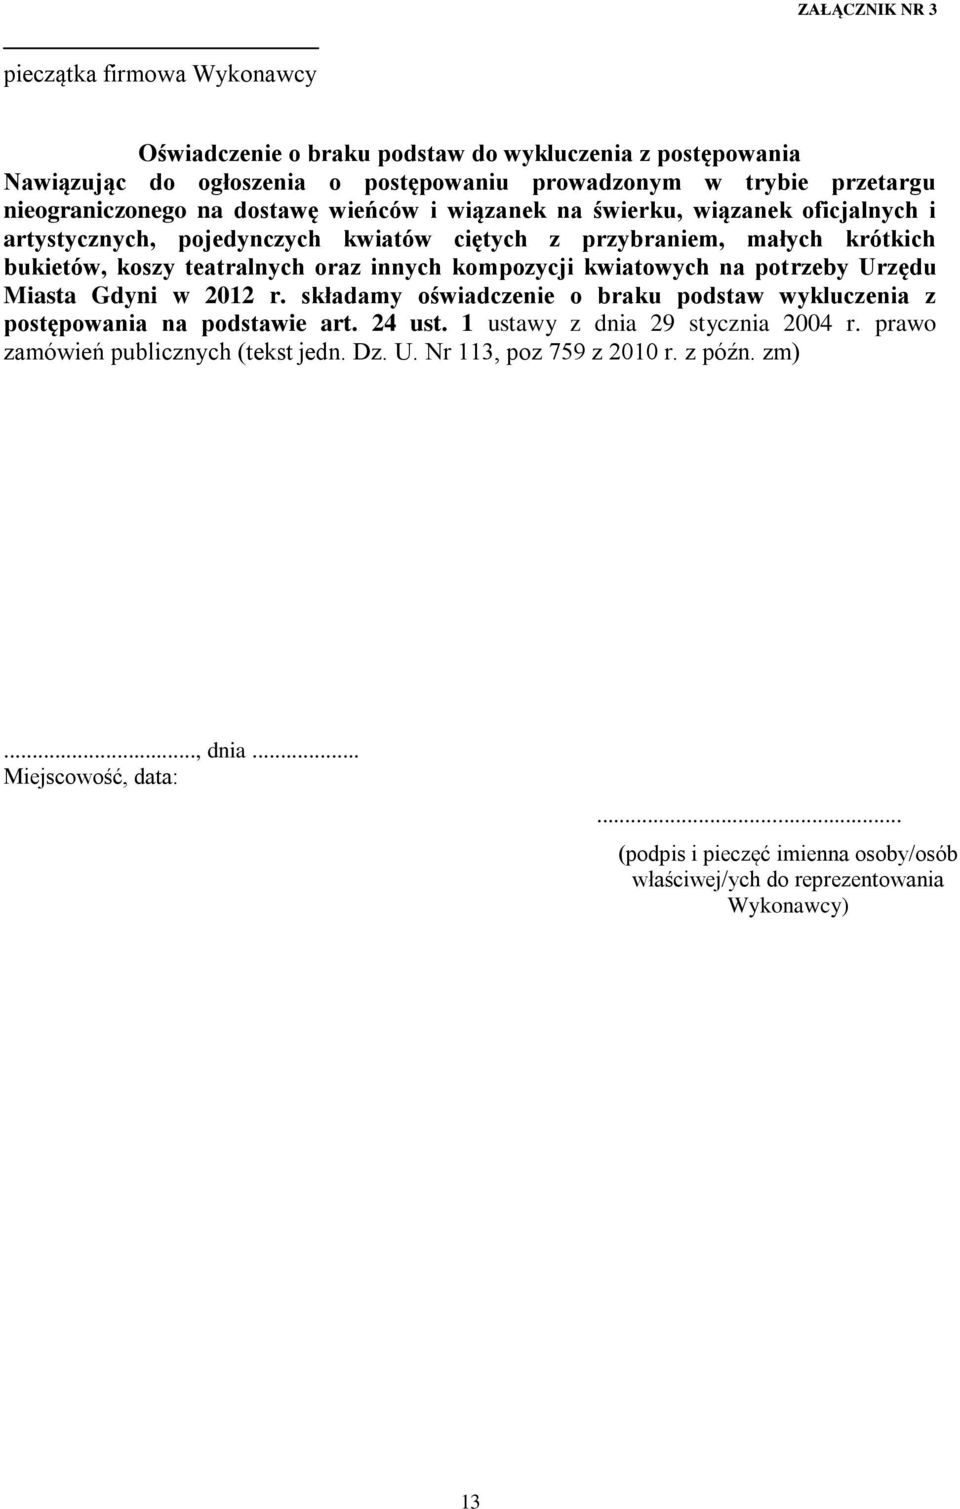 kwiatowych na potrzeby Urzędu Miasta Gdyni w 2012 r. składamy oświadczenie o braku podstaw wykluczenia z postępowania na podstawie art. 24 ust. 1 ustawy z dnia 29 stycznia 2004 r.